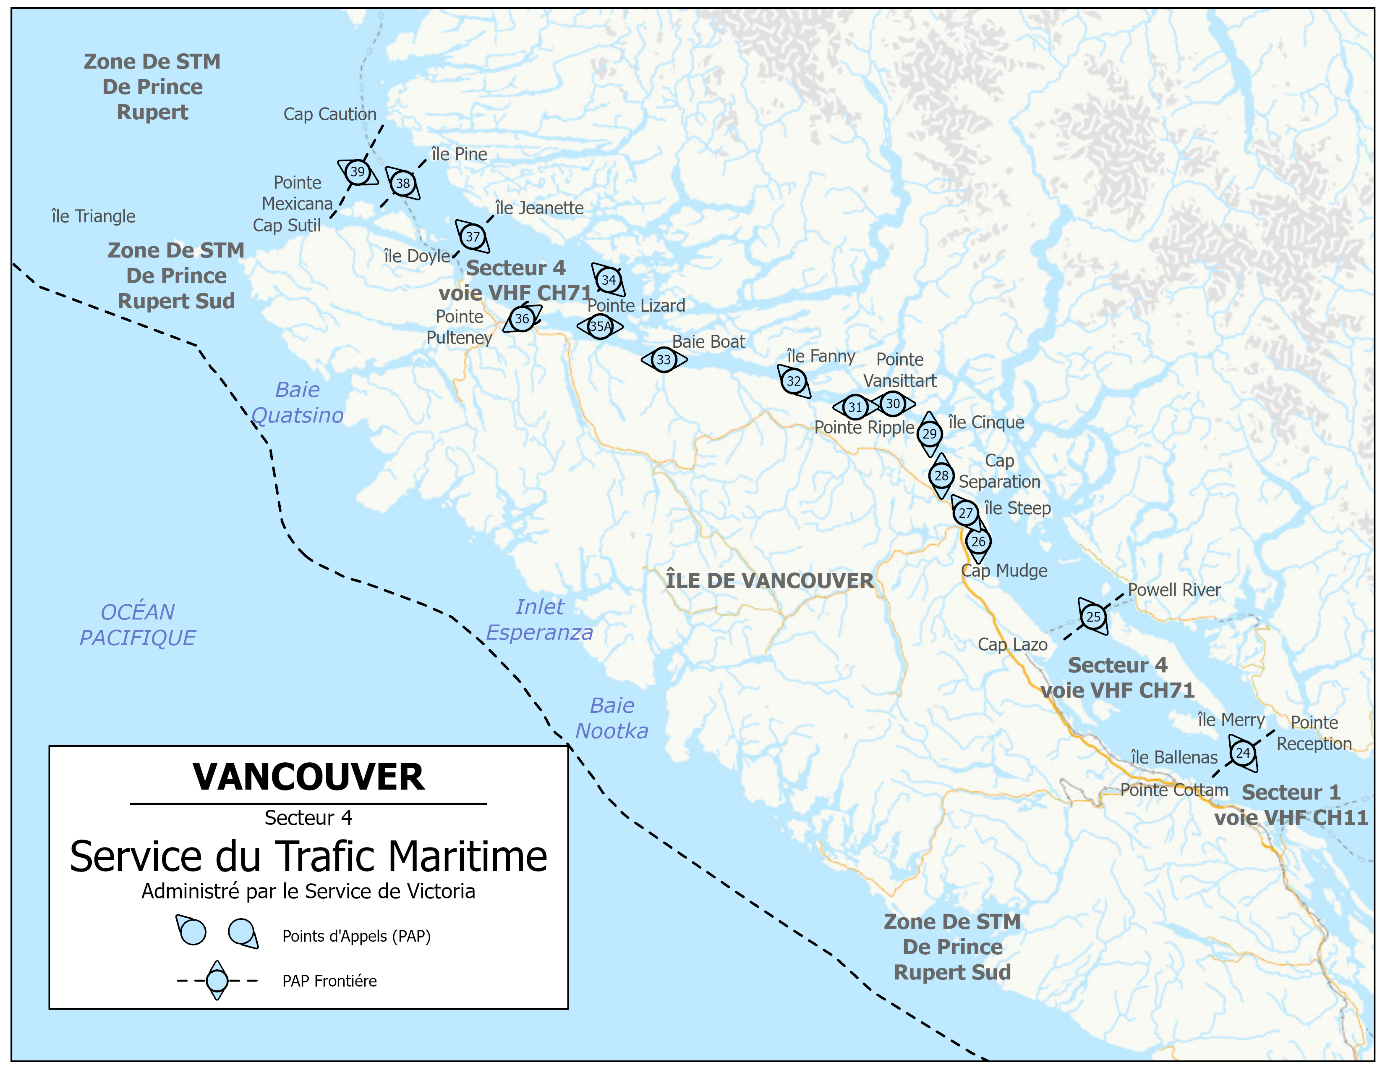 Vancouver - Service du trafic maritime - Secteur 4